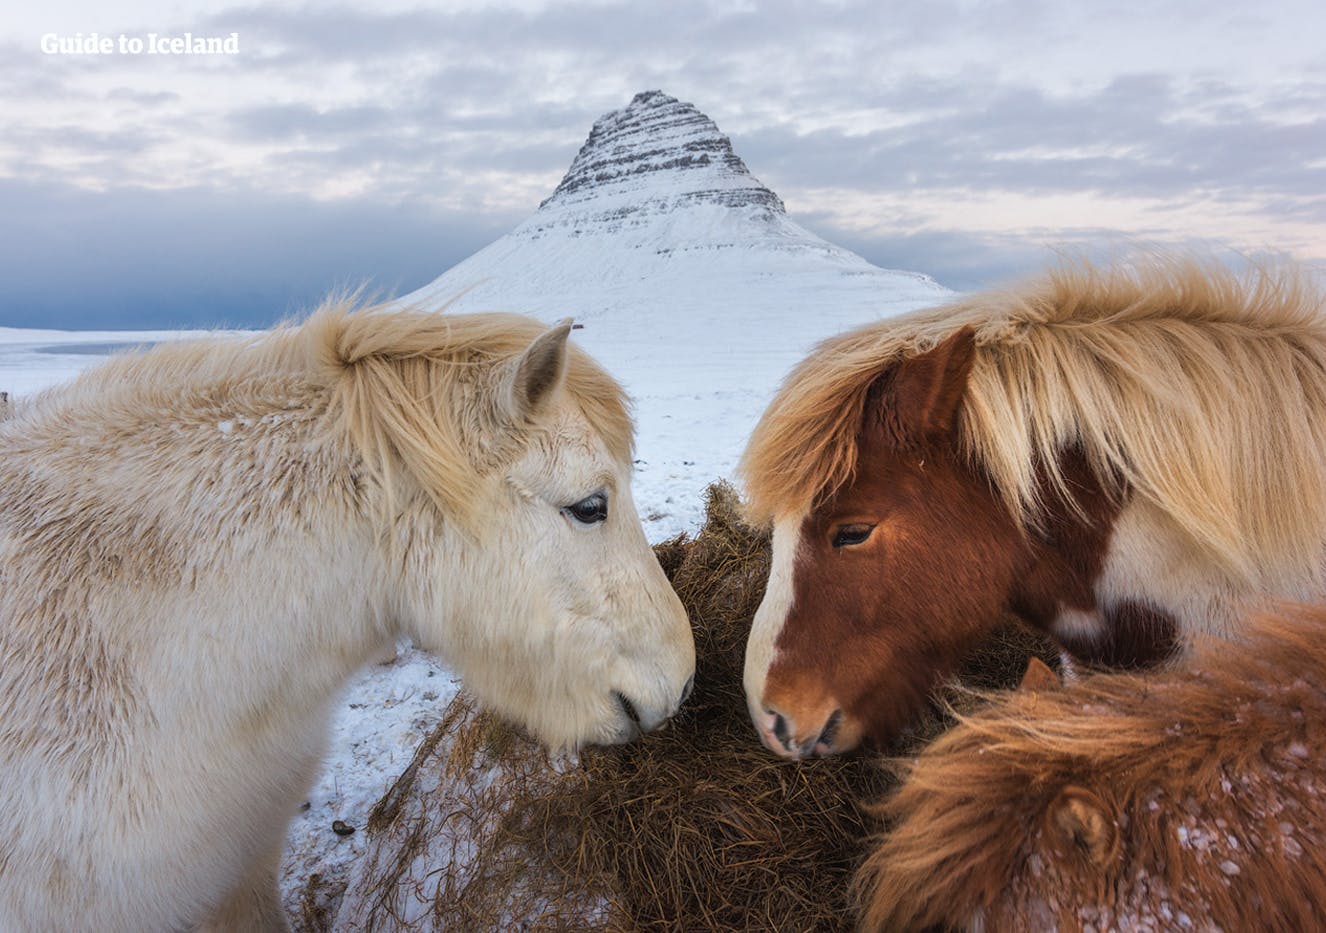 Cavalli islandesi di fronte alla maestosa montagna di Kirkjufell, nella penisola di Snæfellsnes.